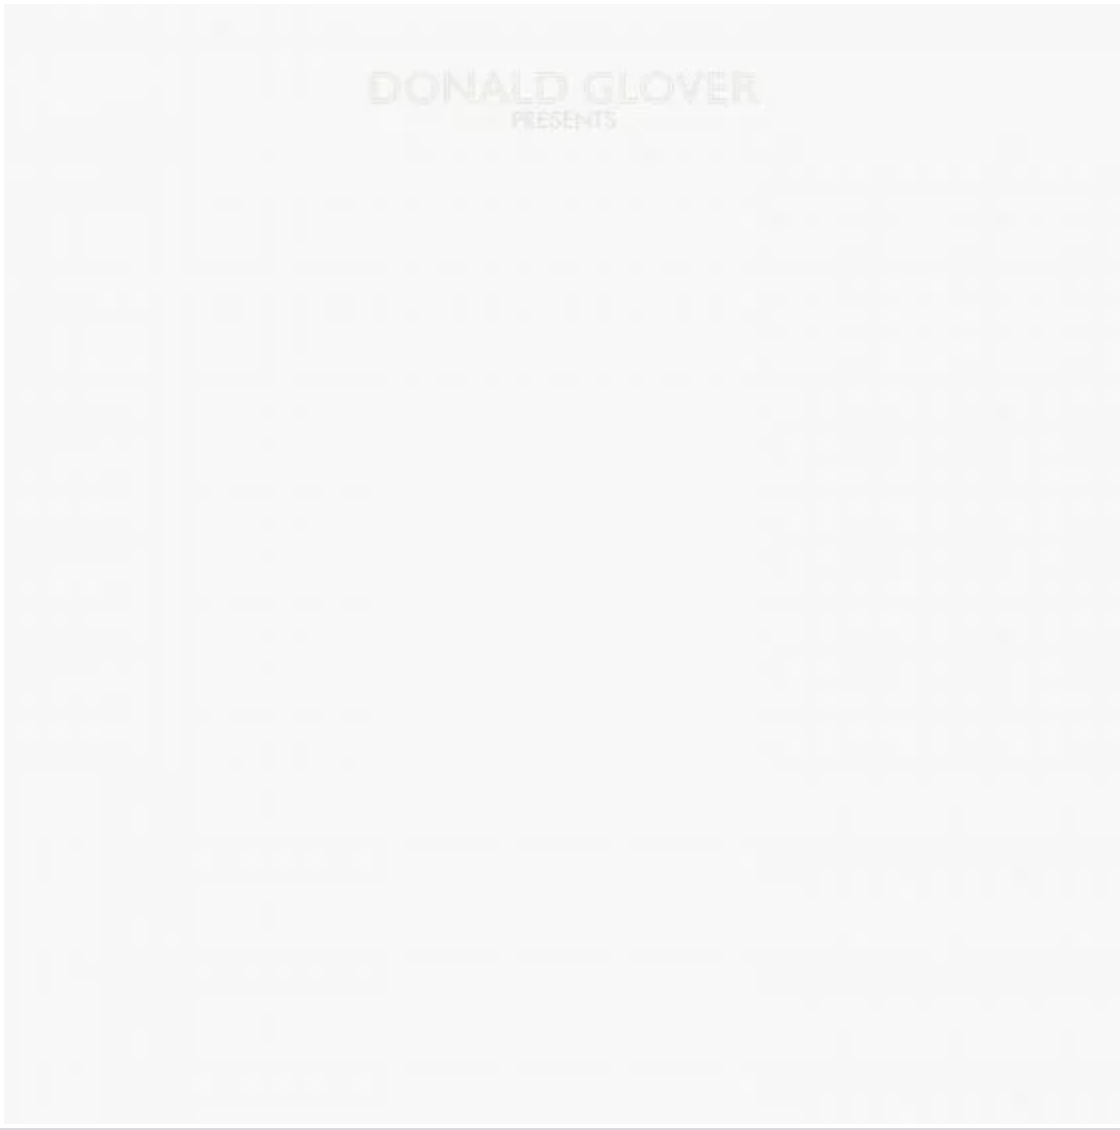 Donald Glover album 3.15.20